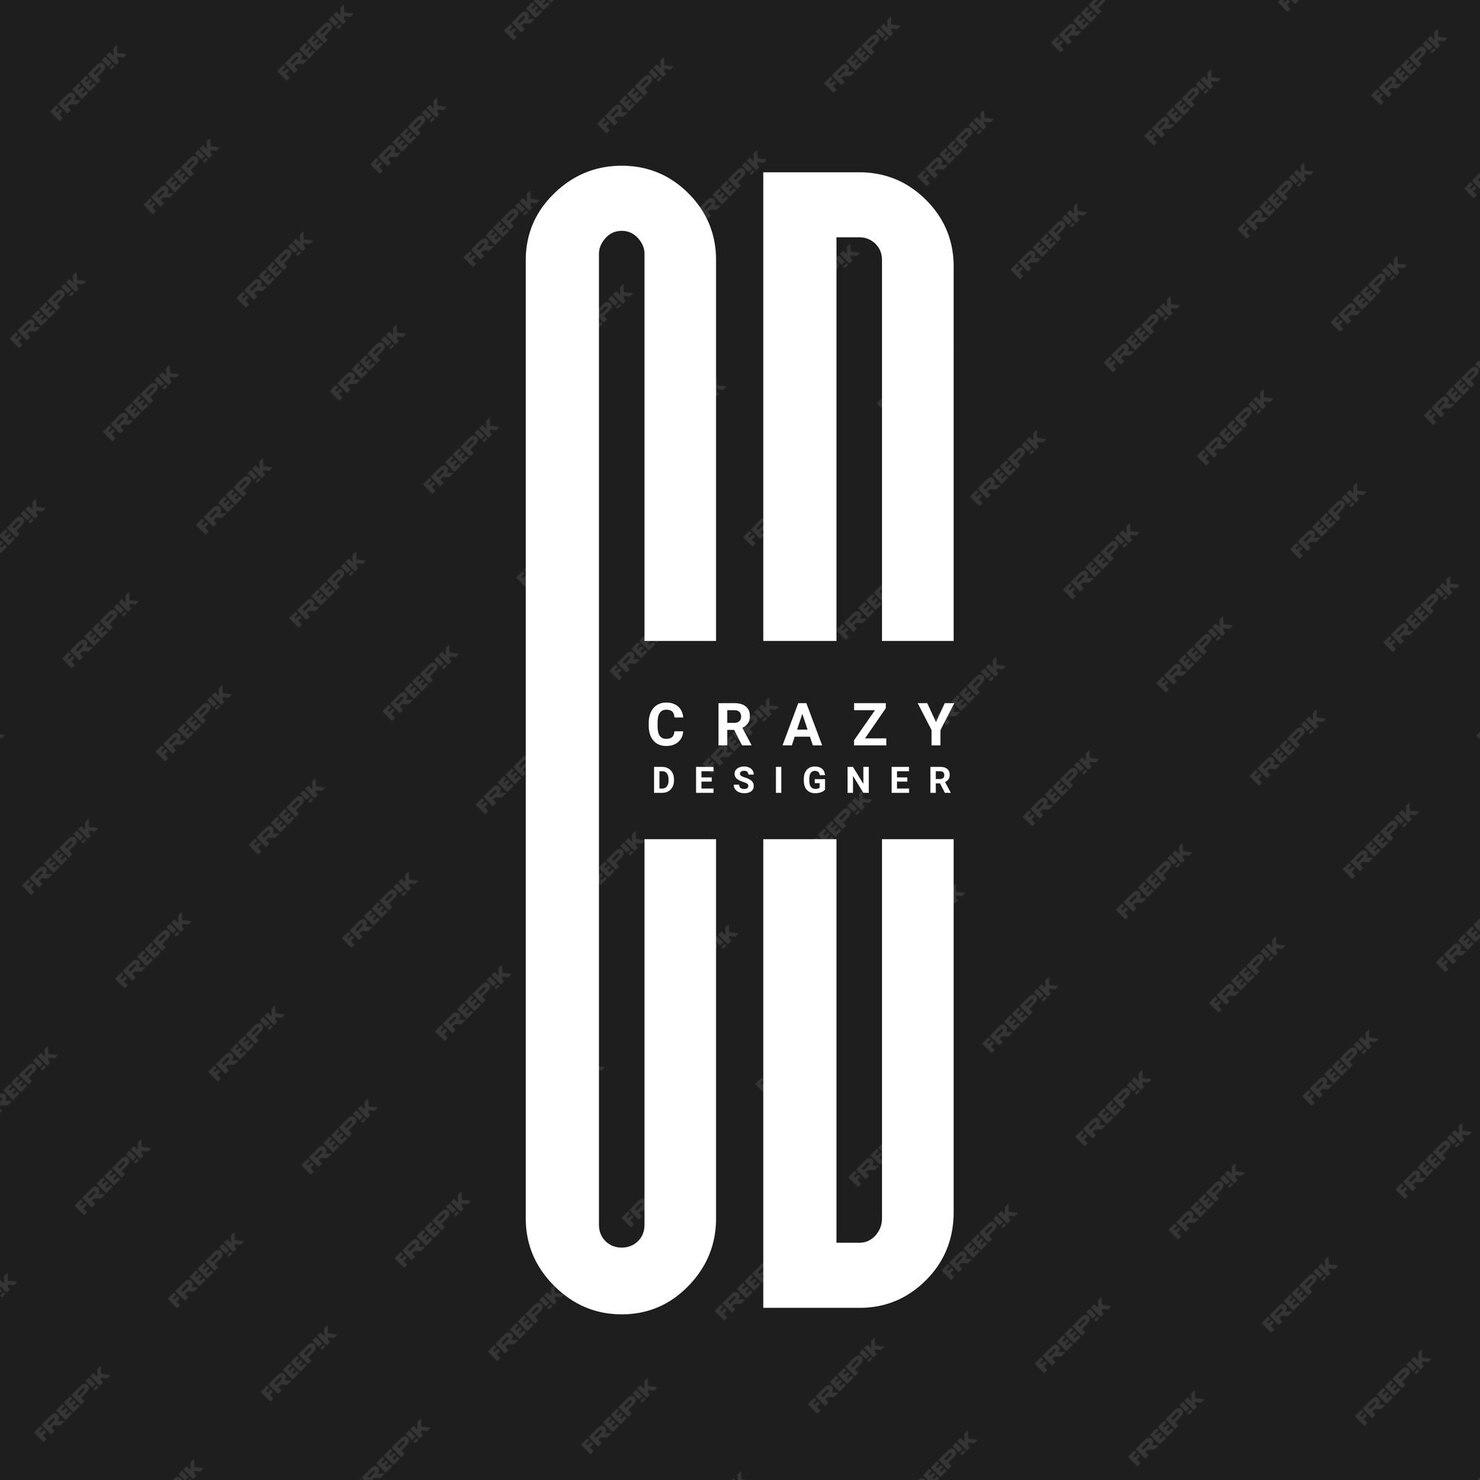 Premium Vector Crazy Designer Logo